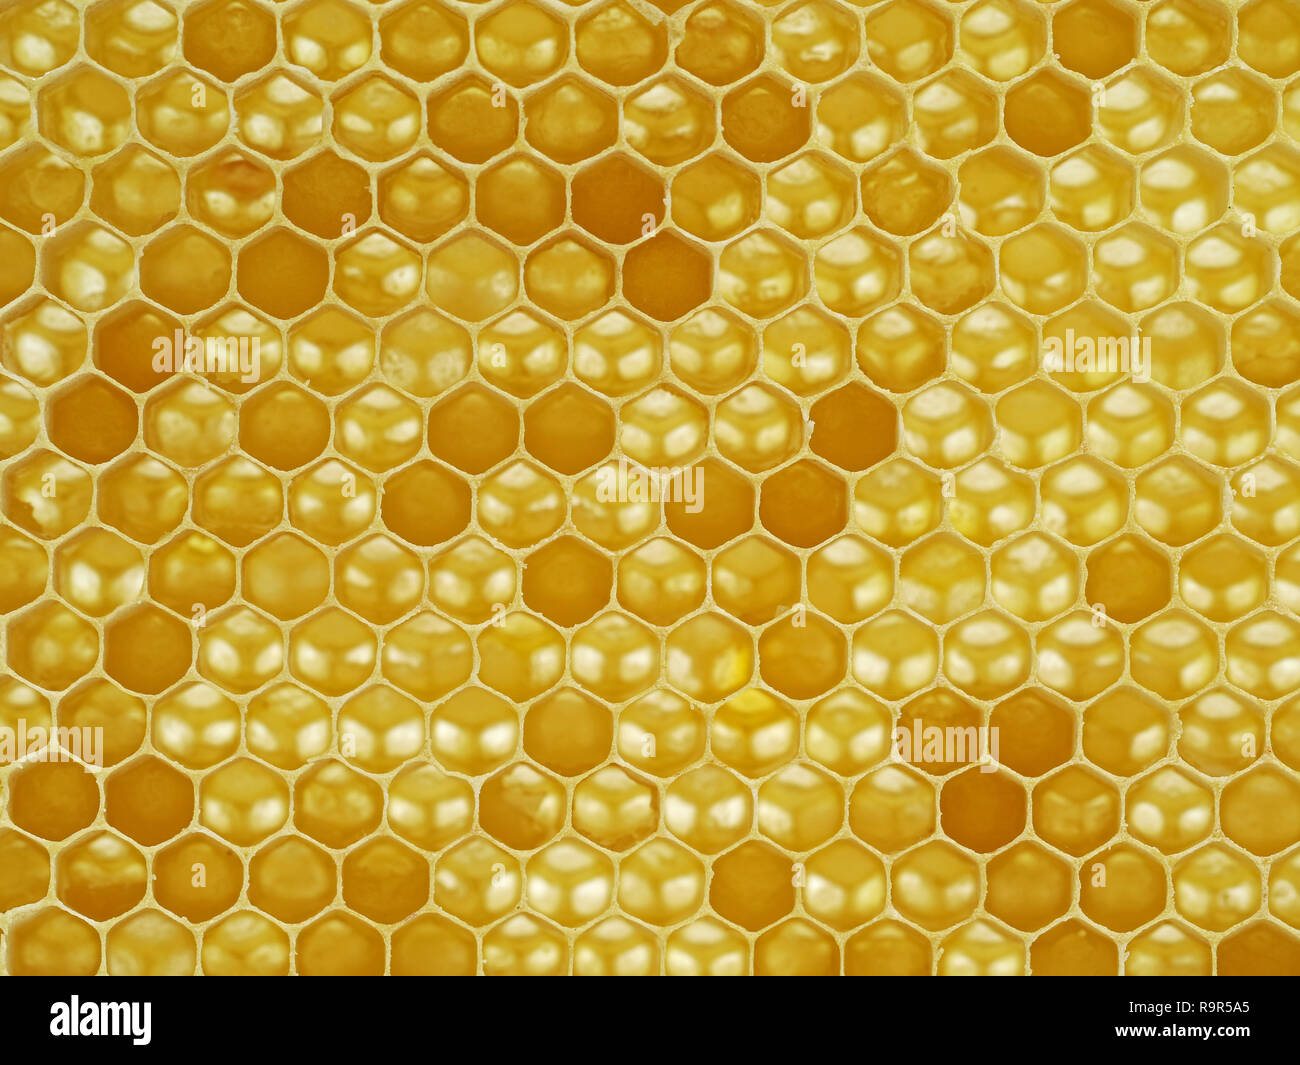 natural looking macro shot, close up of a honeycomb. Stock Photo